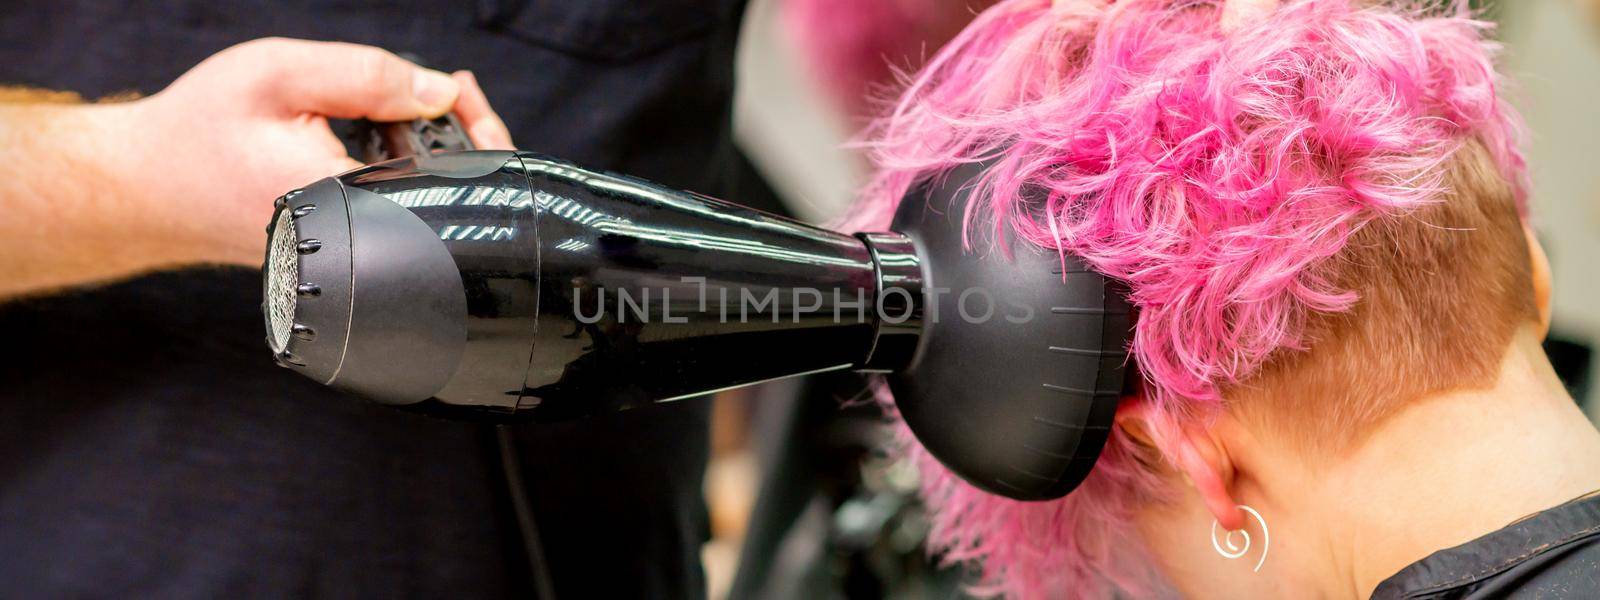 Hairdresser drying short pink hair by okskukuruza